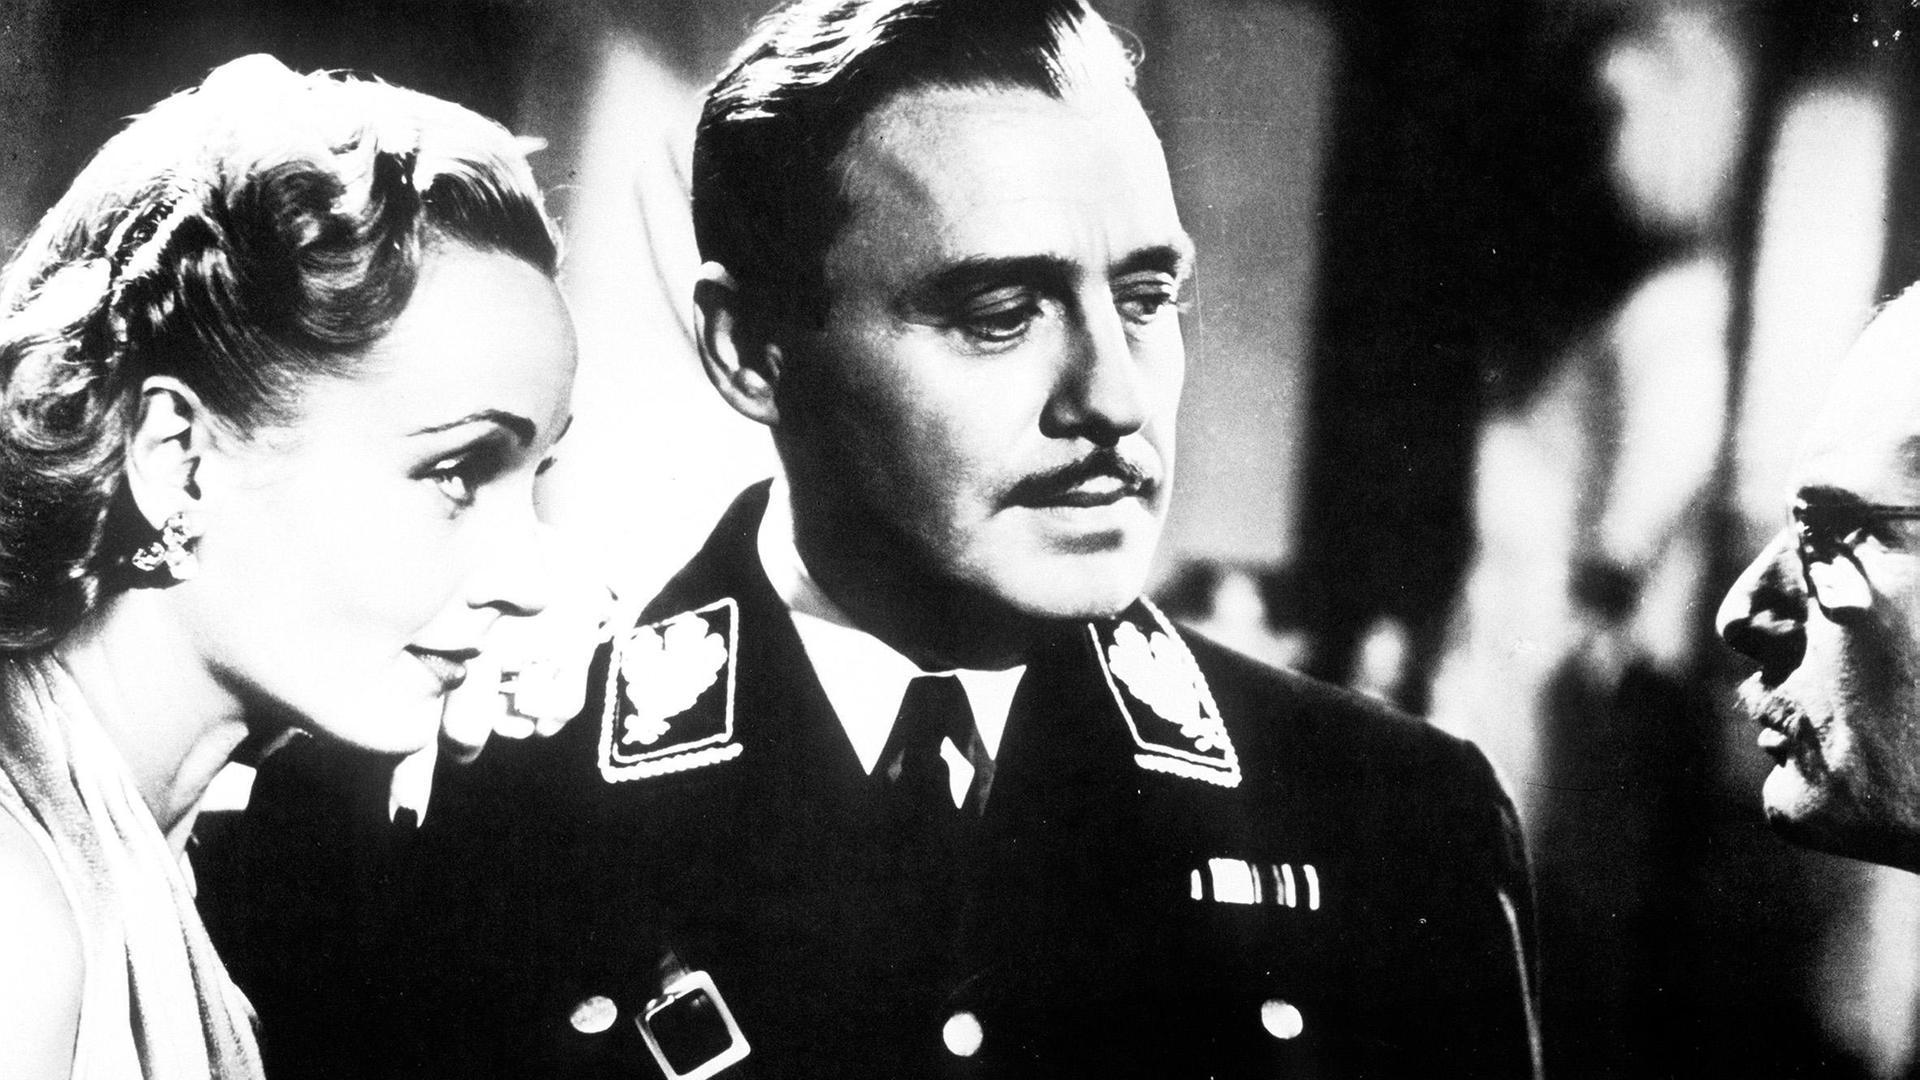 Ernst Lubitschs "Sein oder Nichtsein " von 1942 - satirische Filmkomödie über polnische Schauspieler, die ihre für ein Antinazistück hergestellten Uniformen für die Arbeit in der Widerstandbewegung benutzen